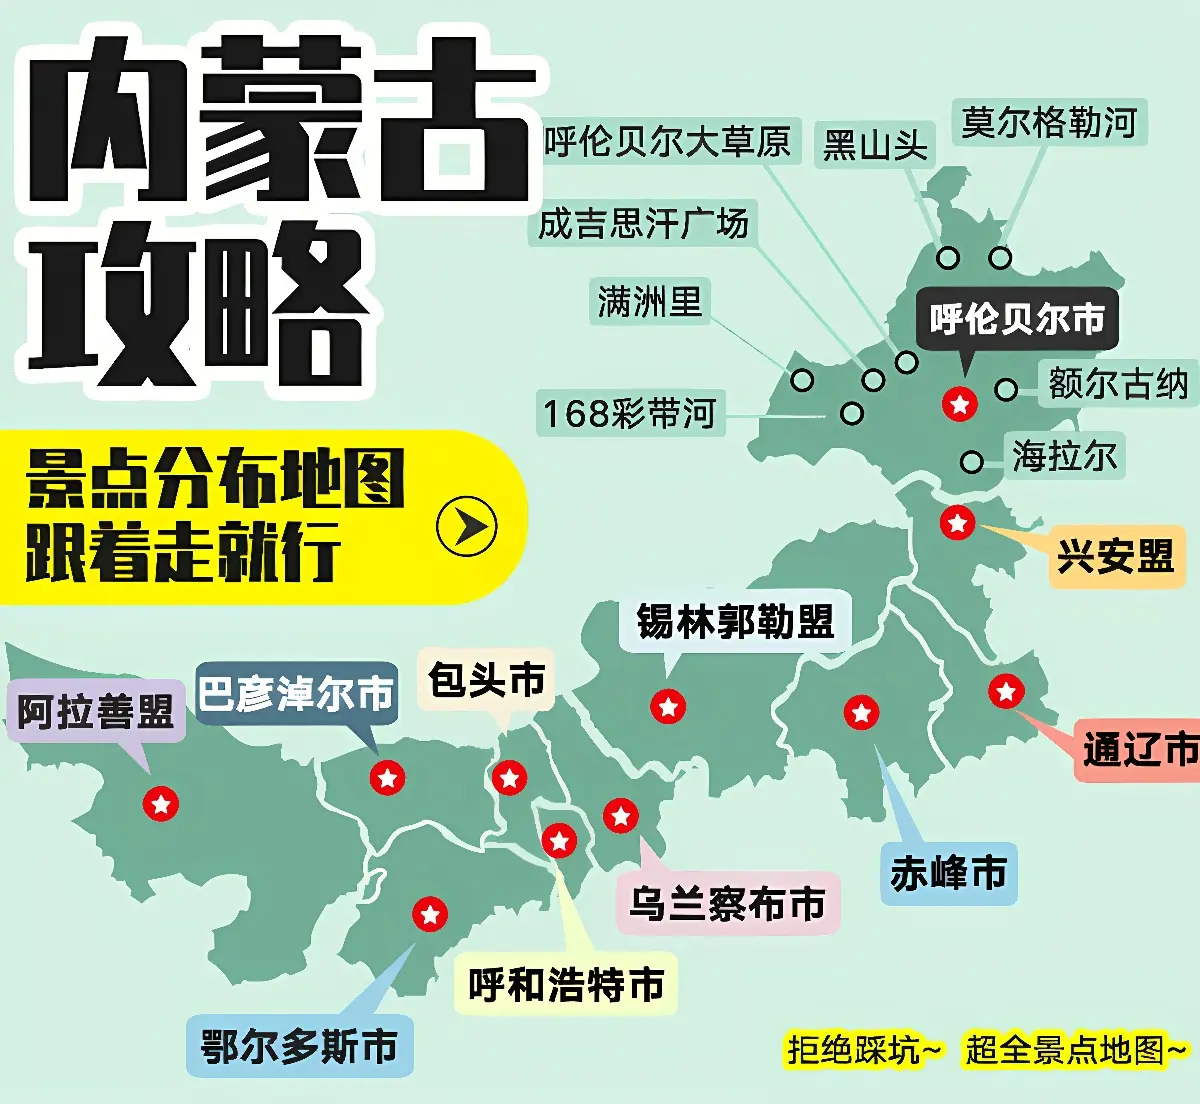 这是一张含有多个标记的中国地图，展示了不同城市间的航线或联系，中间有“航空快递”等字样，可能是物流广告或信息图。